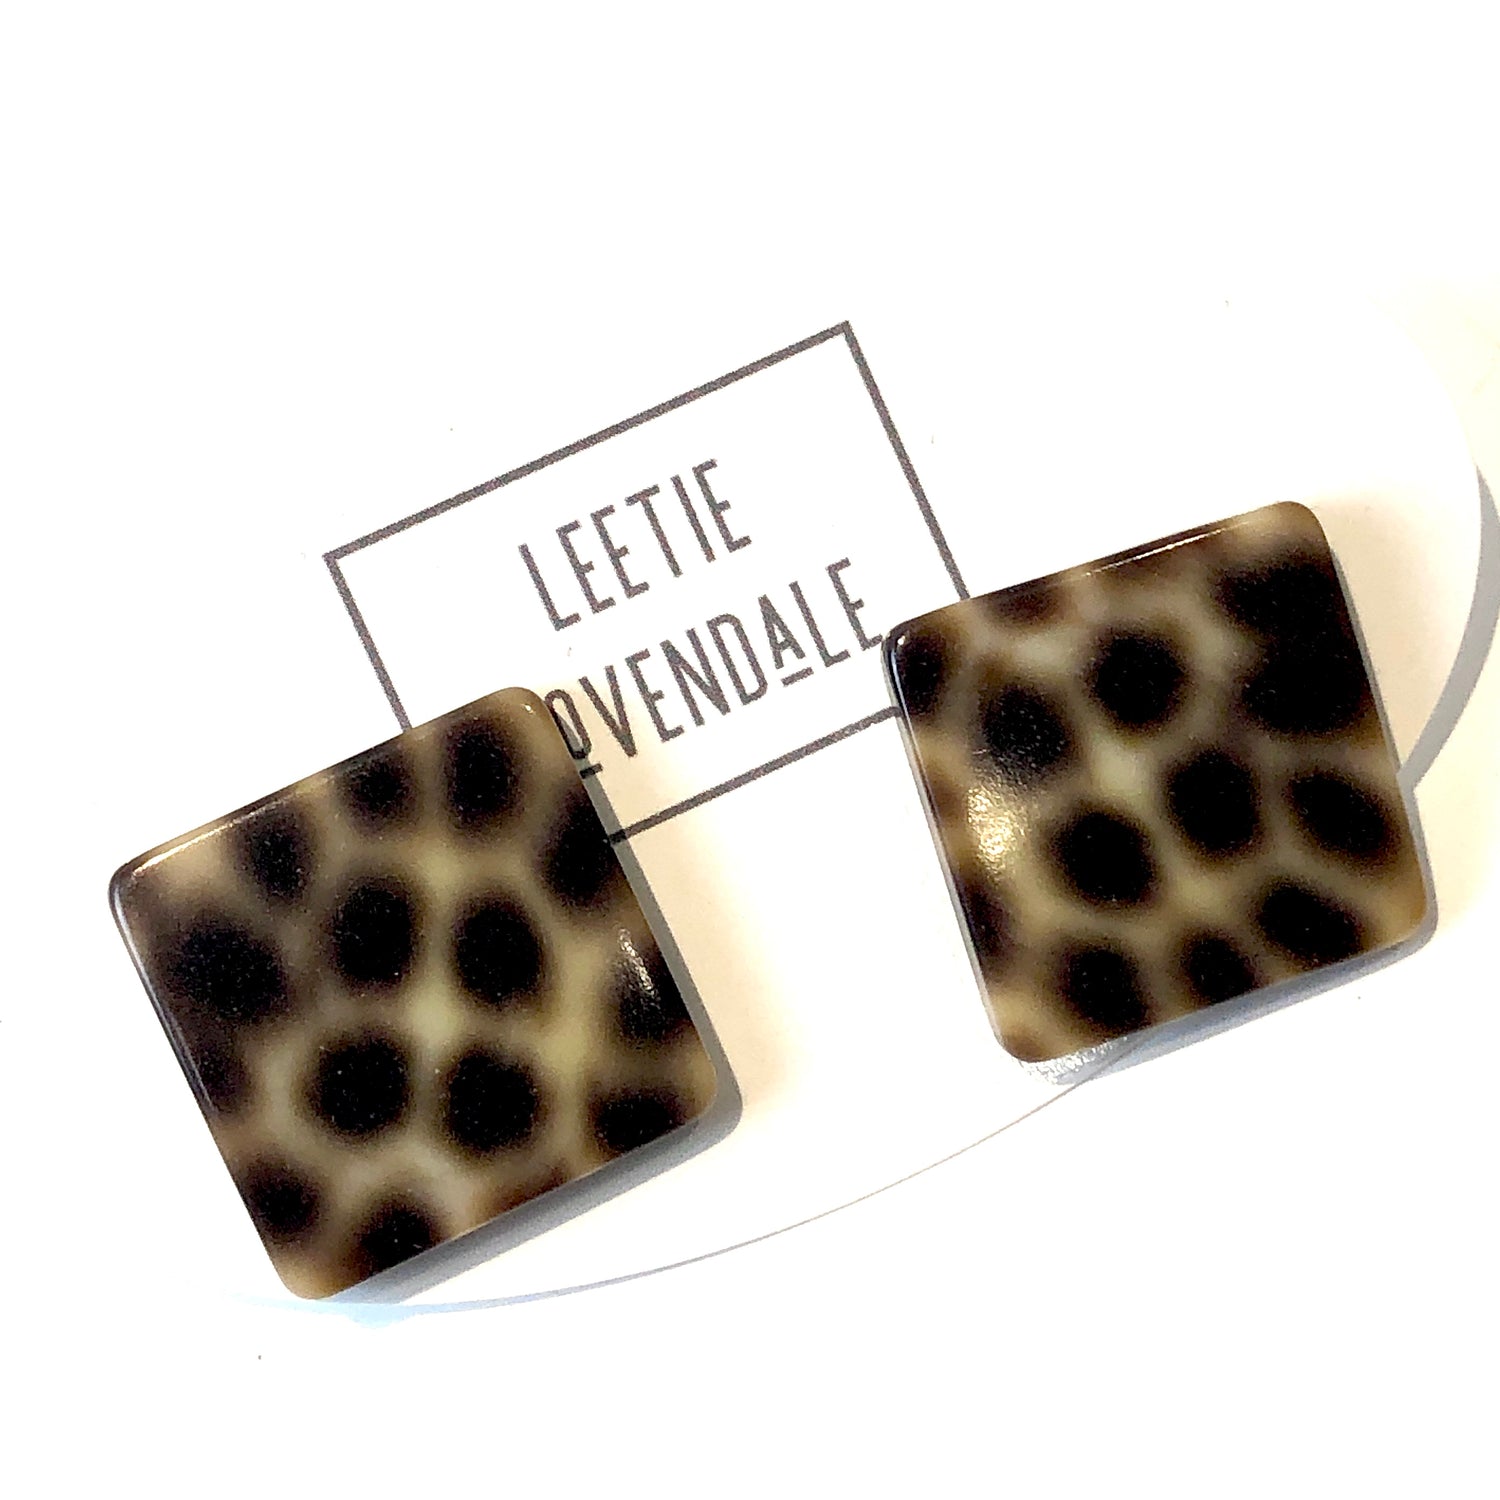 leopard print earrings